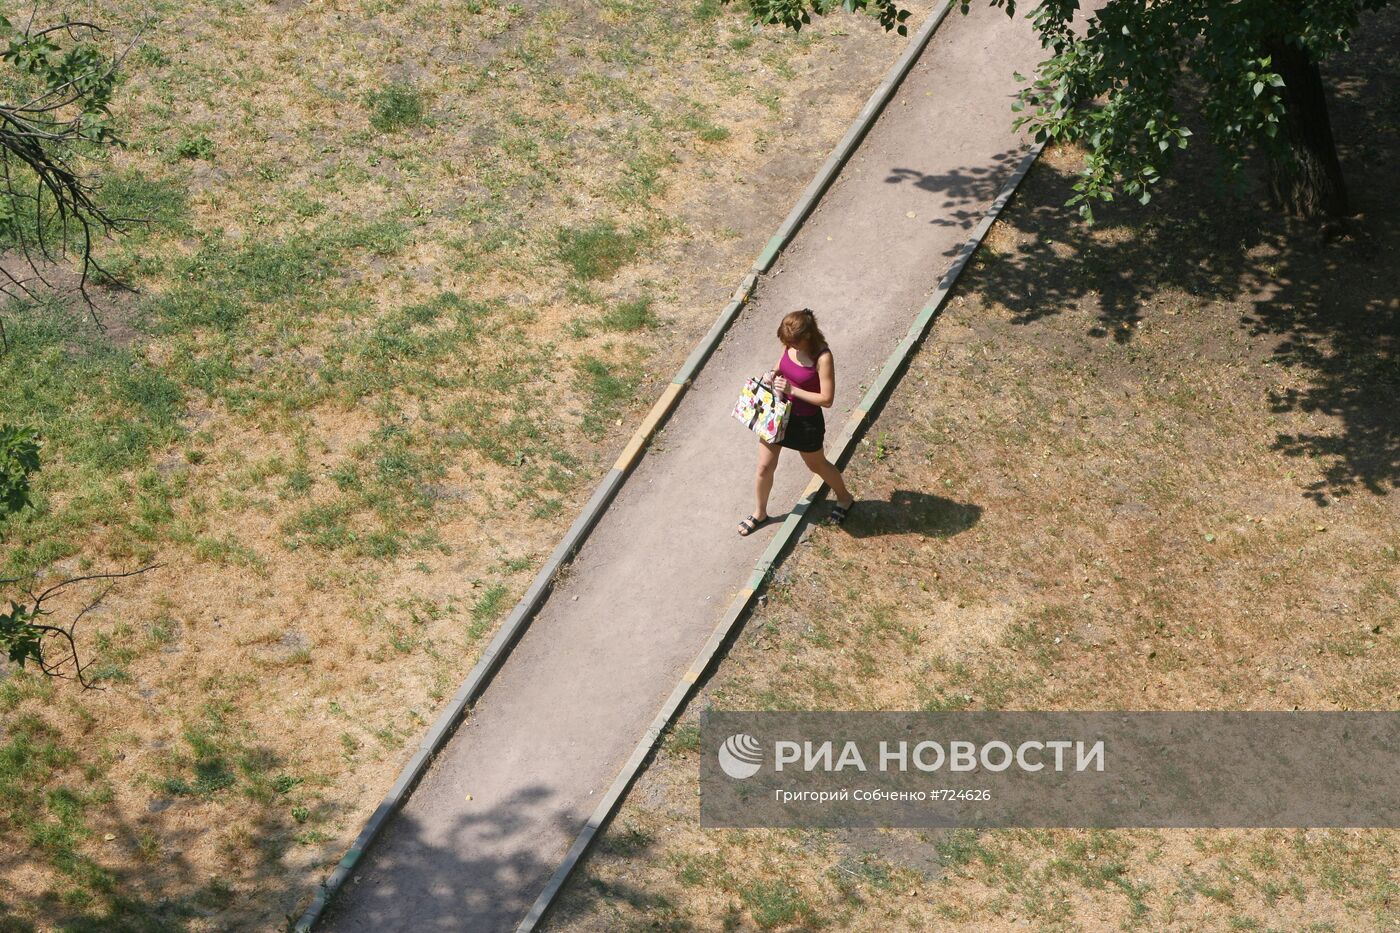 Пожелтевшая трава на улицах Москвы